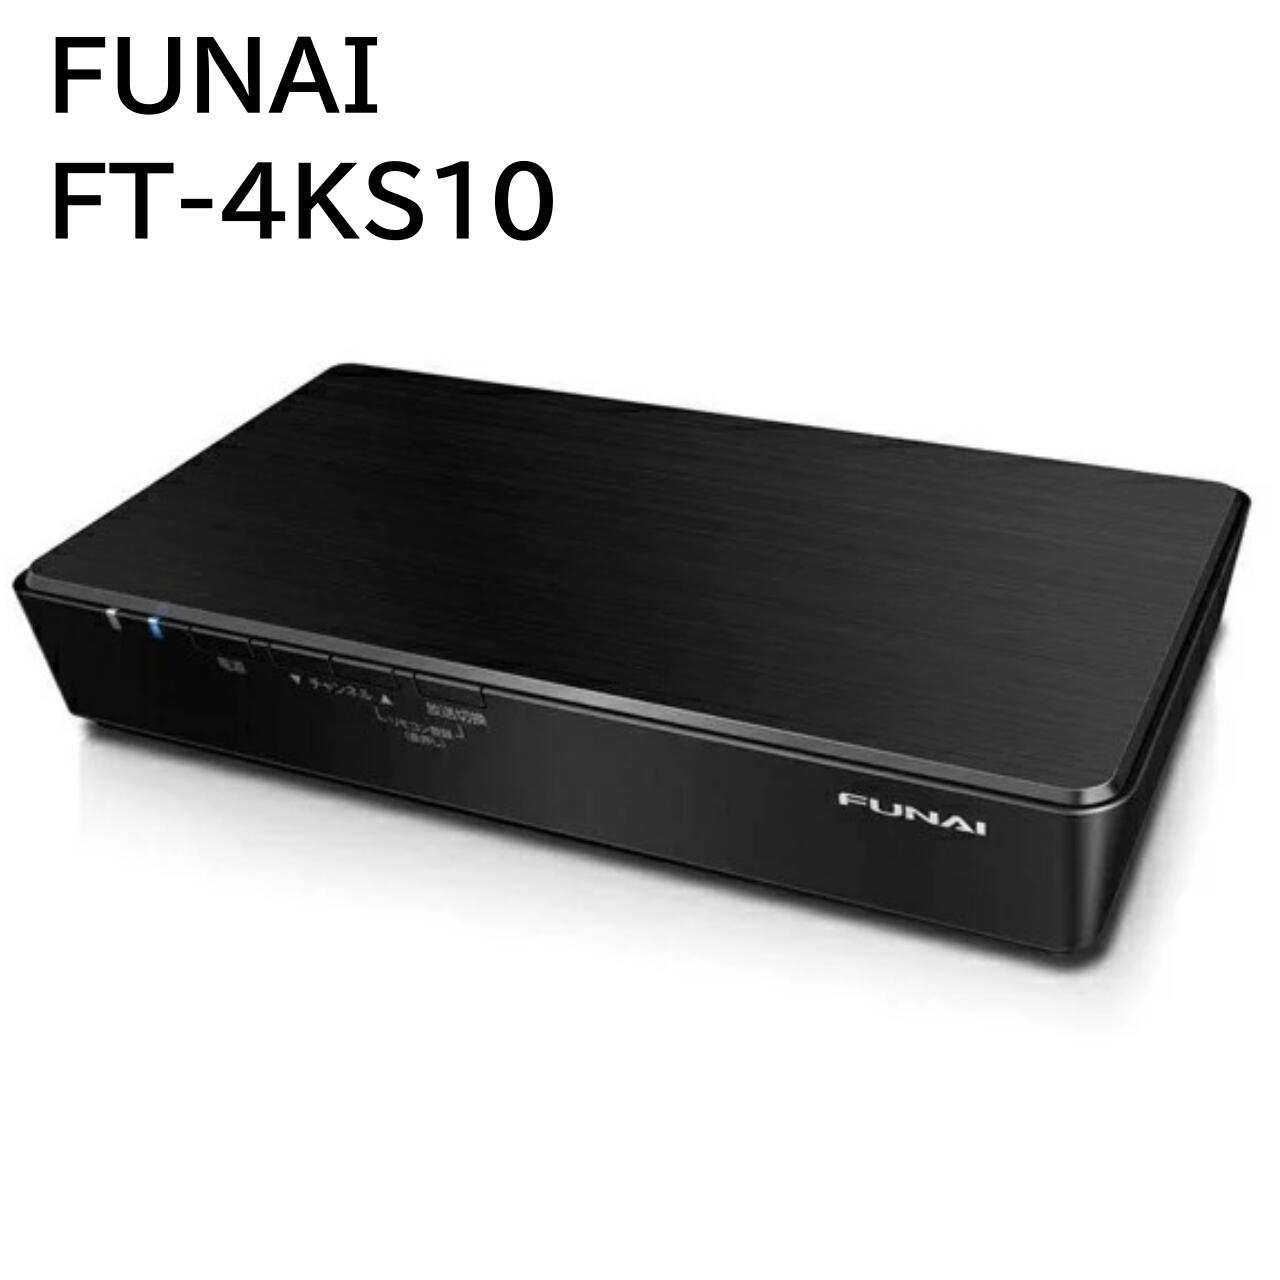 公式サイト-FUNAI フナイ FT-4KS10 テレビチューナー 新4K衛星放送対応 